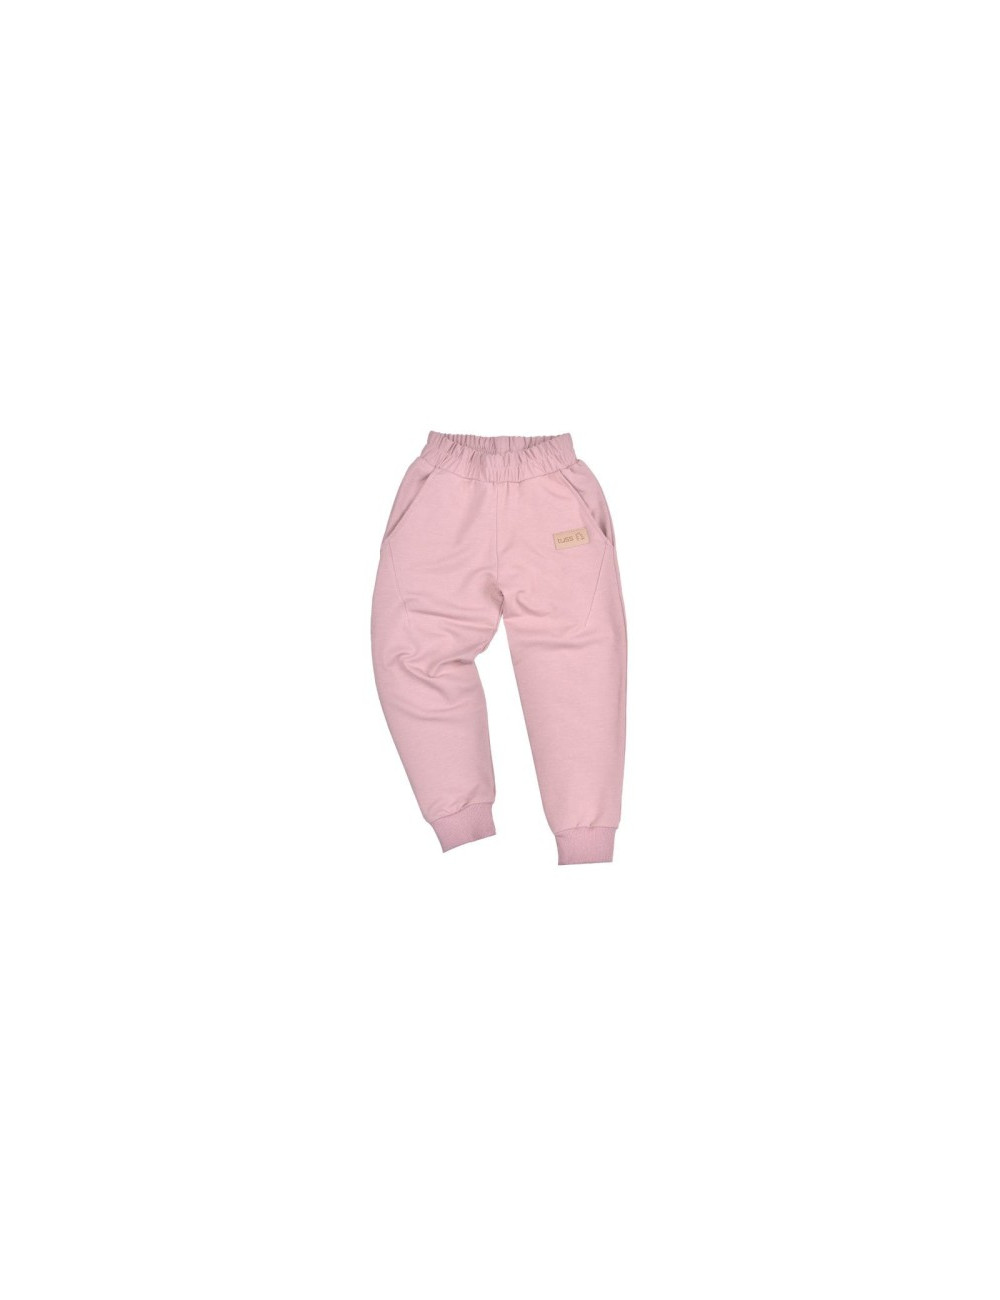 Spodnie KID Tuss Kolekcja Family Dusty Pink